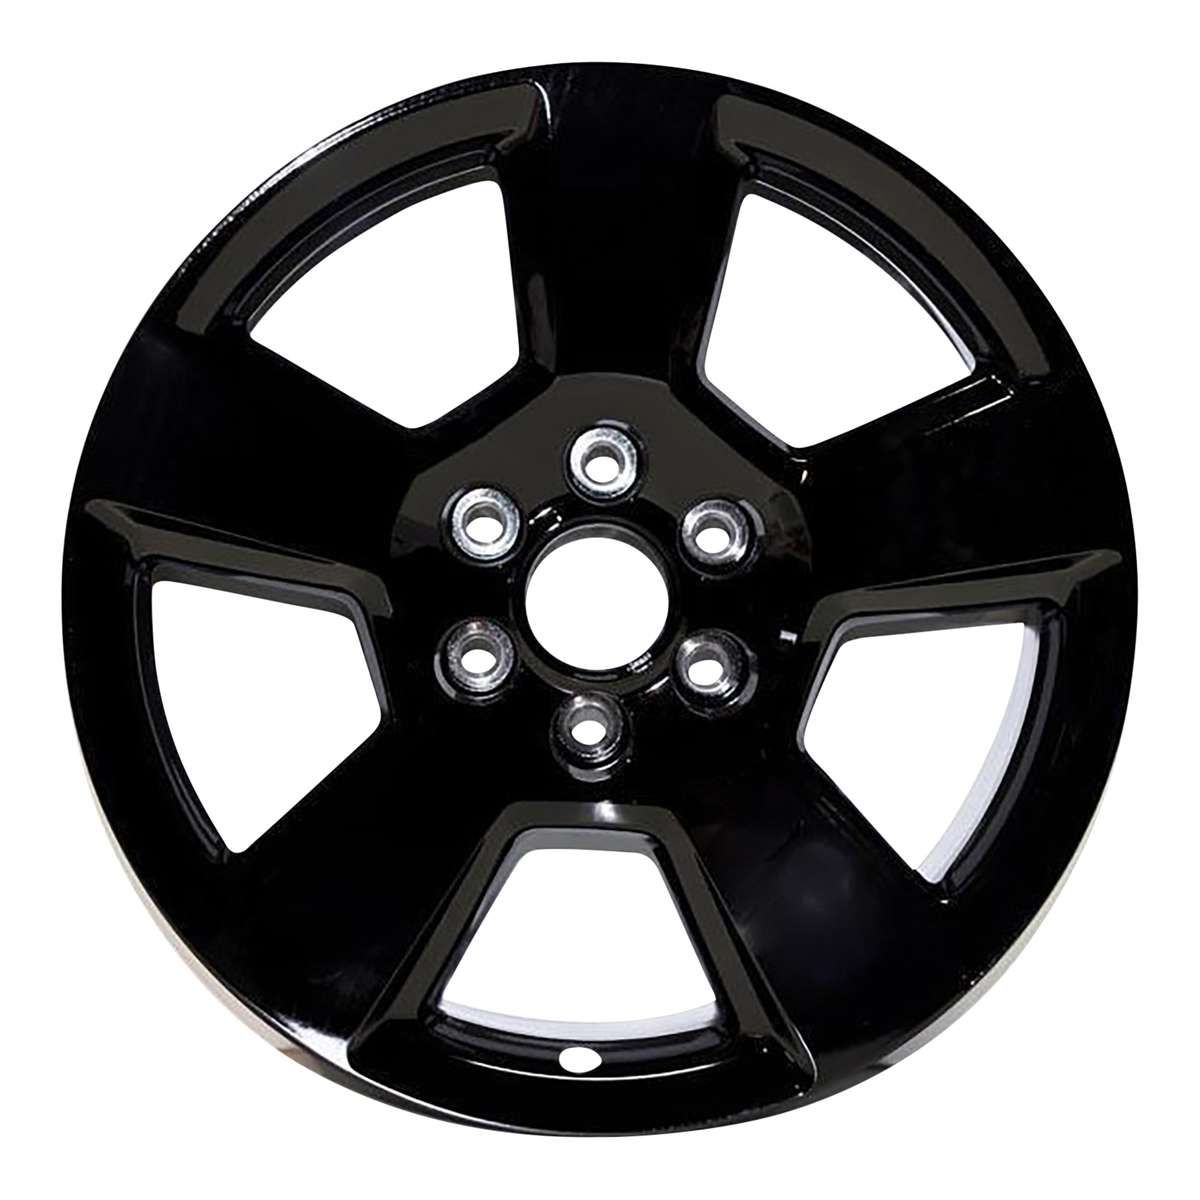 2014 Chevrolet Silverado 1500 New 20" Replacement Wheel Rim RW5754B